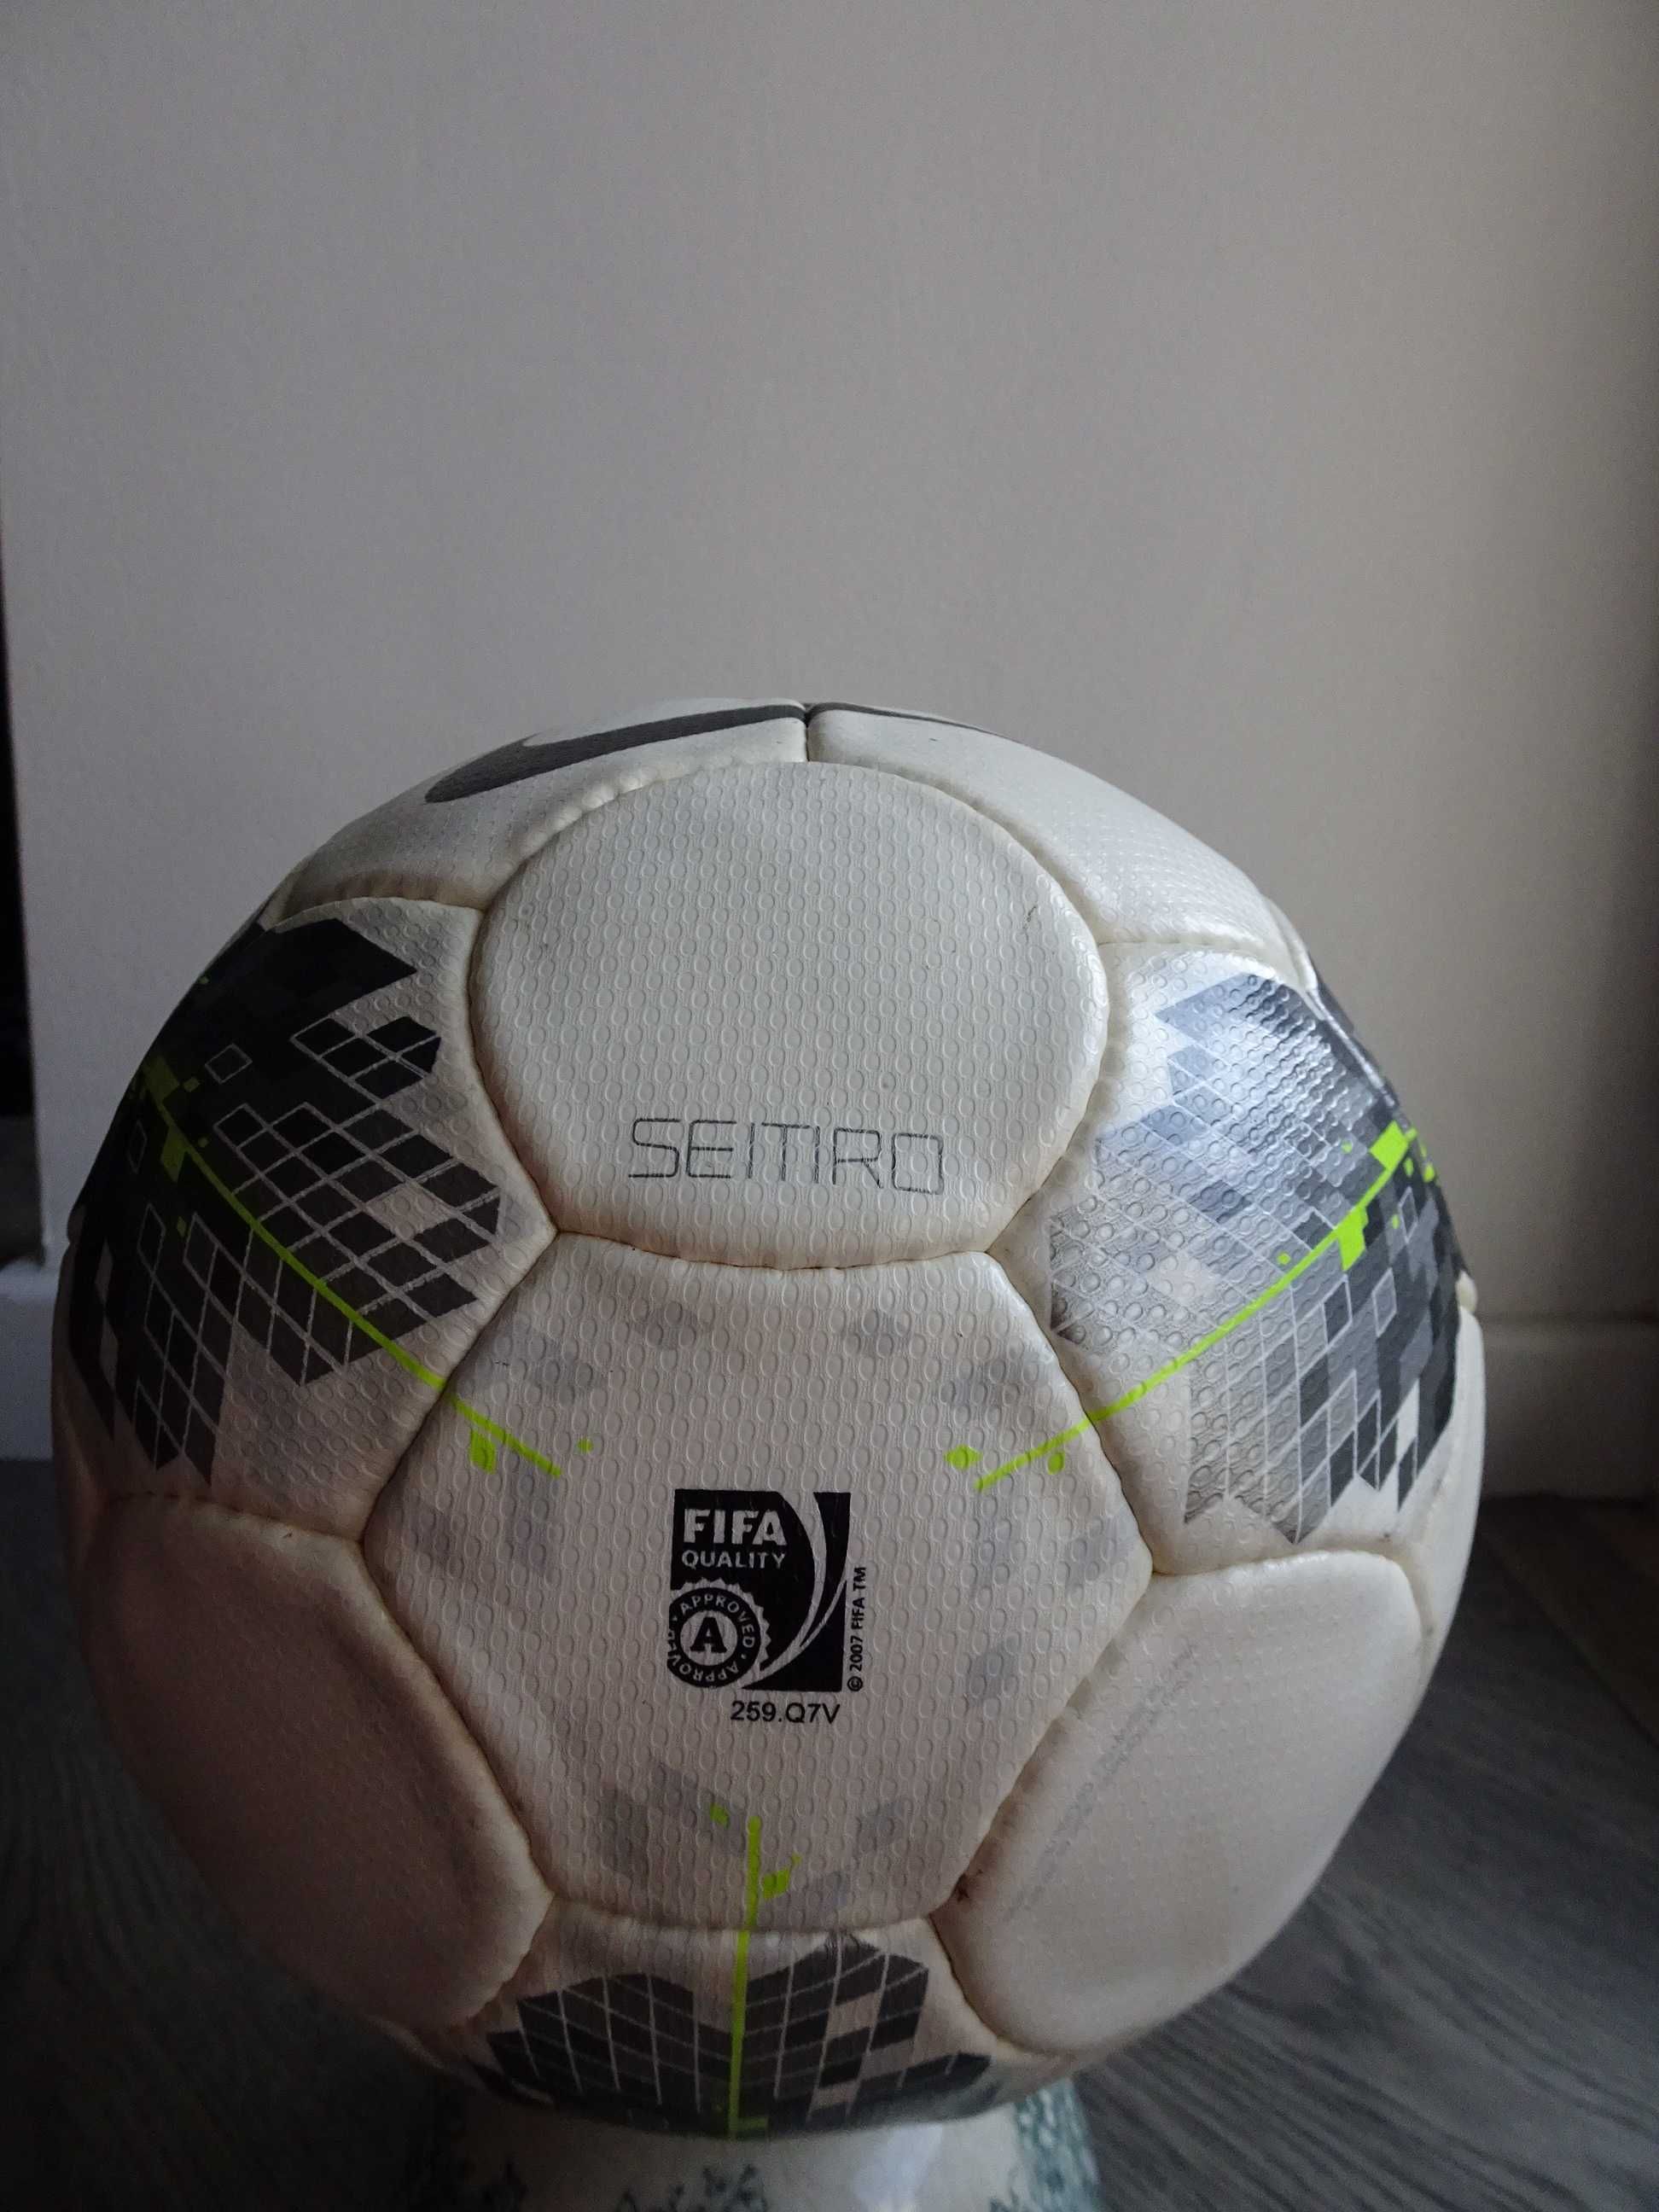 Bola futebol de jogo match ball 2011 Nike Seitiro